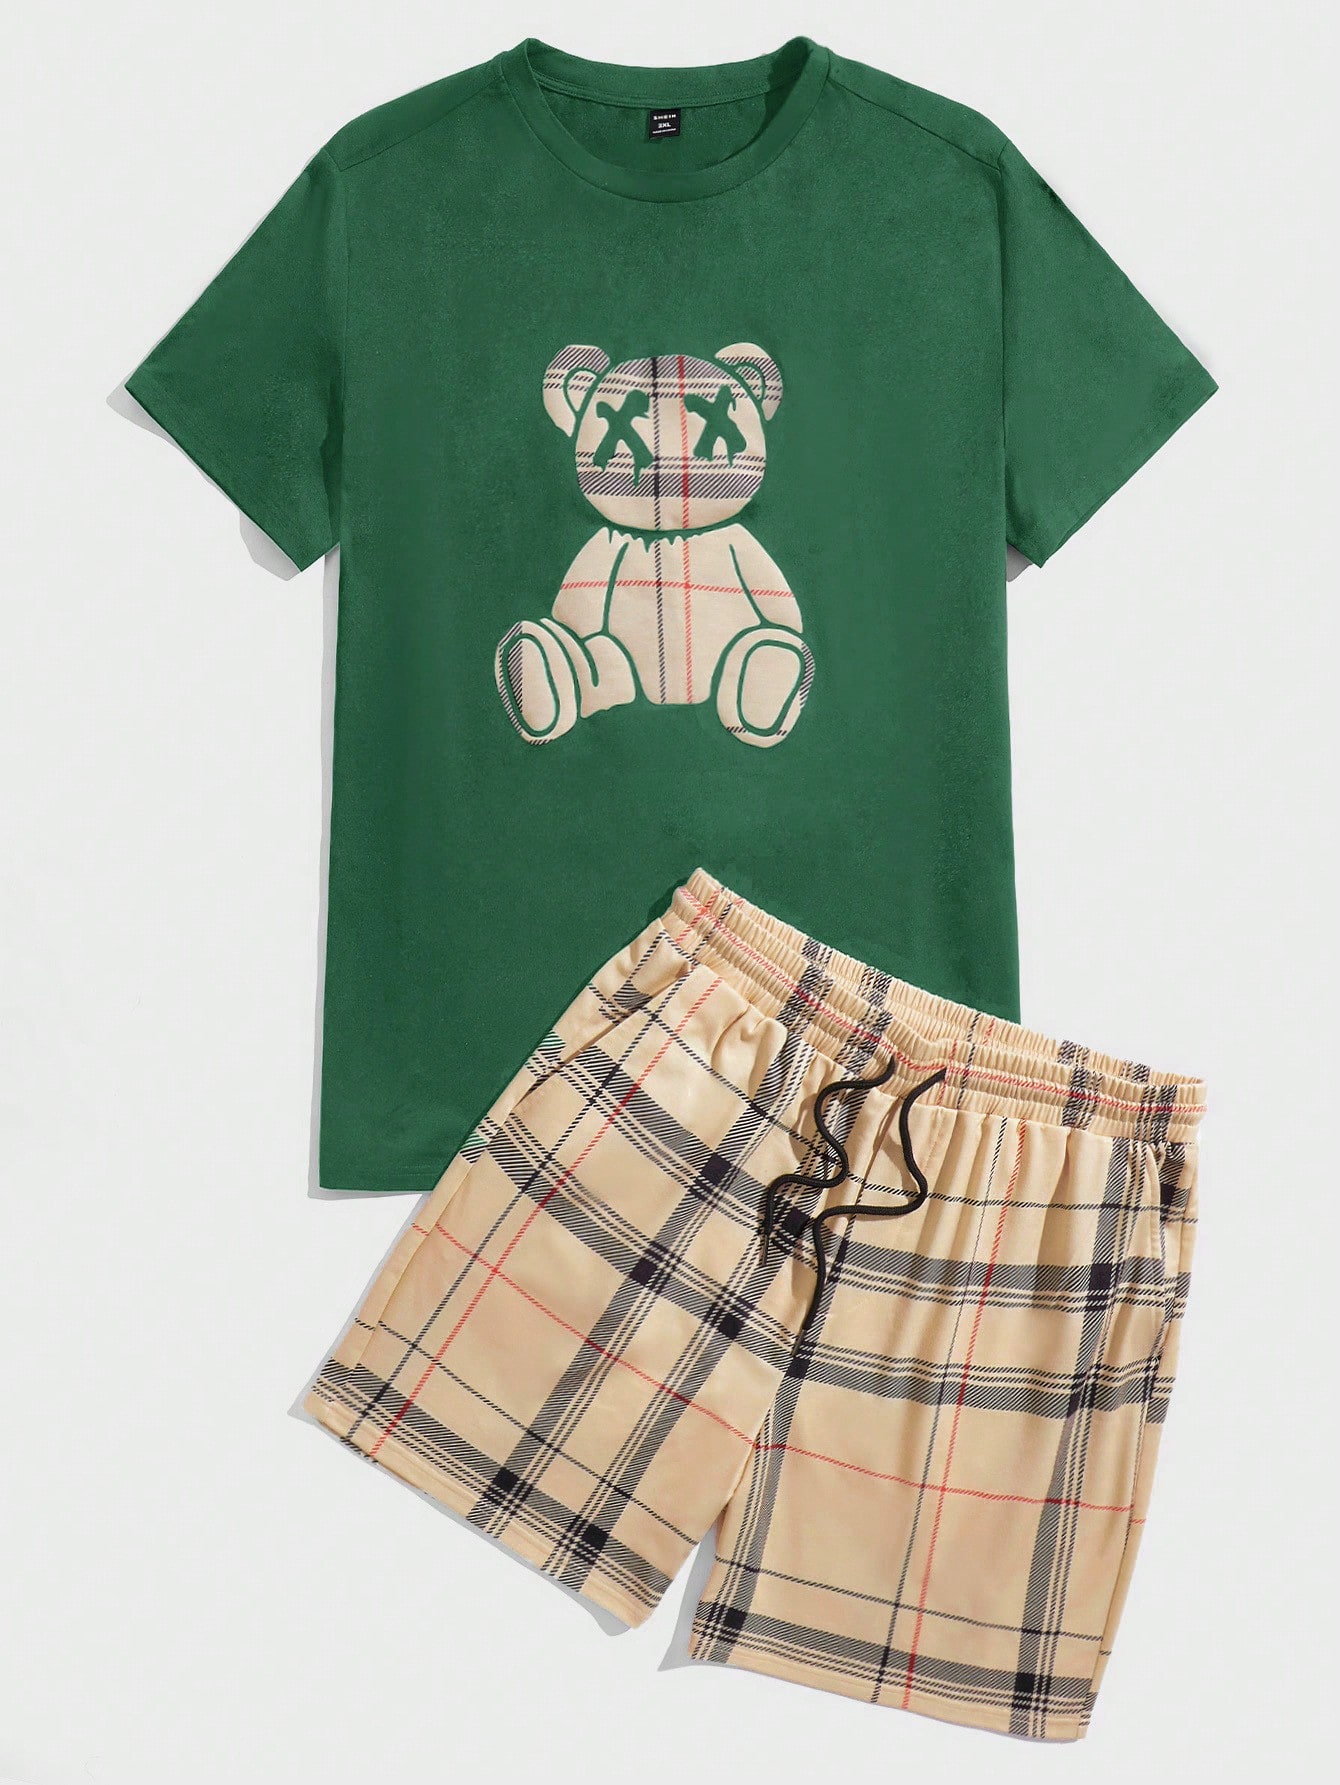 Manfinity Hypemode Мужская футболка и шорты в клетку с мультяшным принтом больших размеров, темно-зеленый футболка мужская женская хлопковая с мультяшным принтом европейские размеры